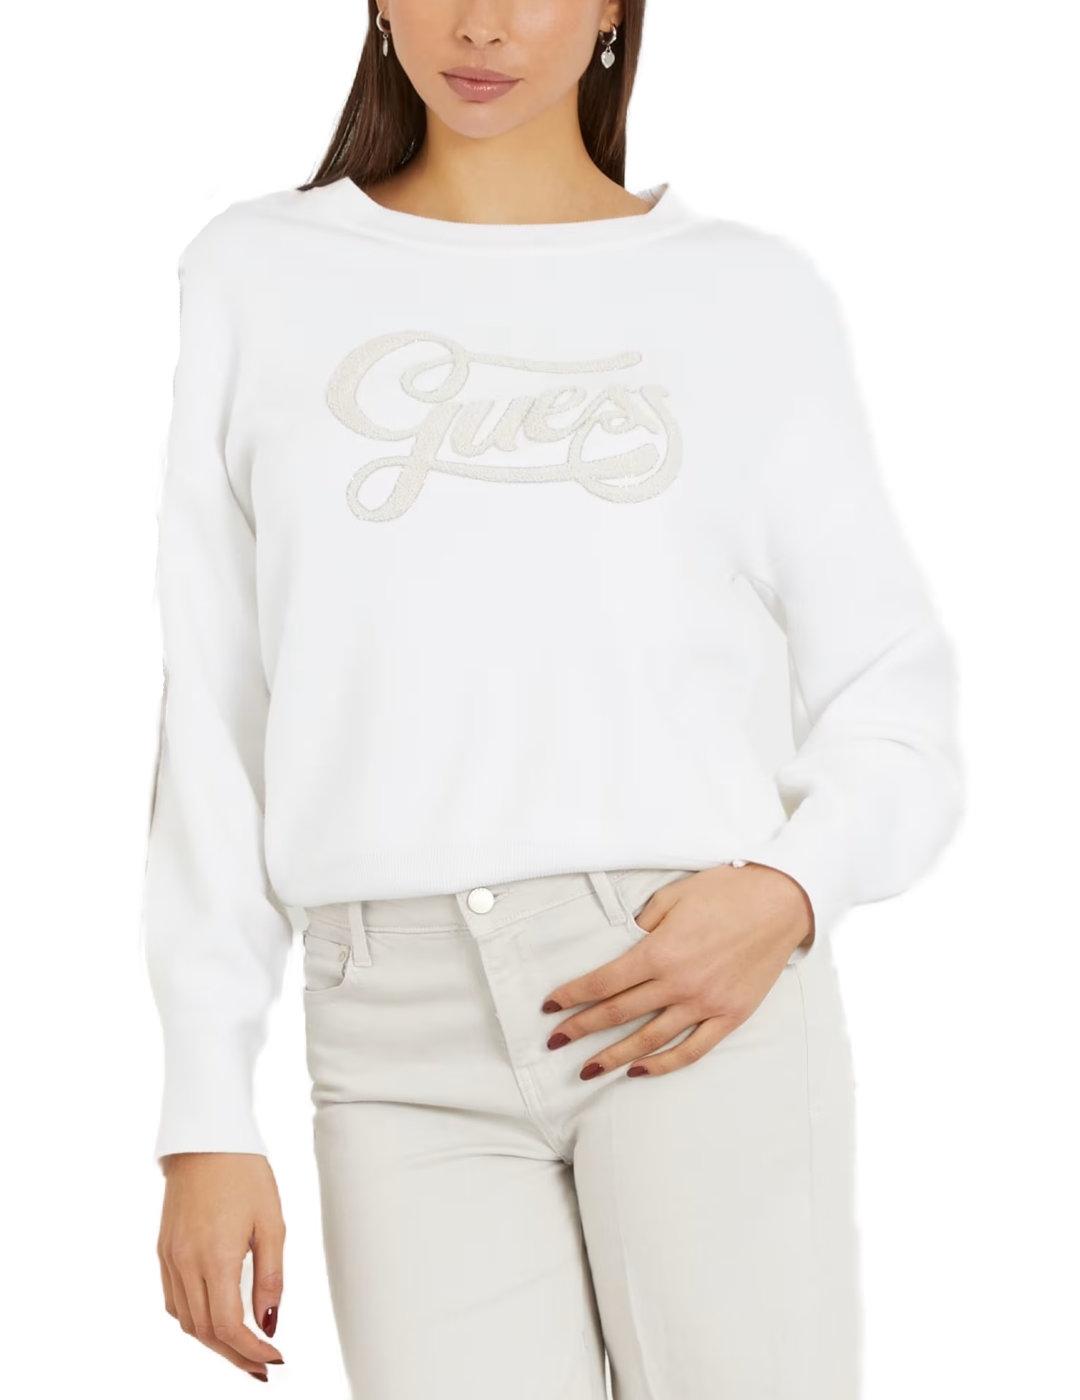 Sudadera Guess Logo blanco sin capucha para mujer